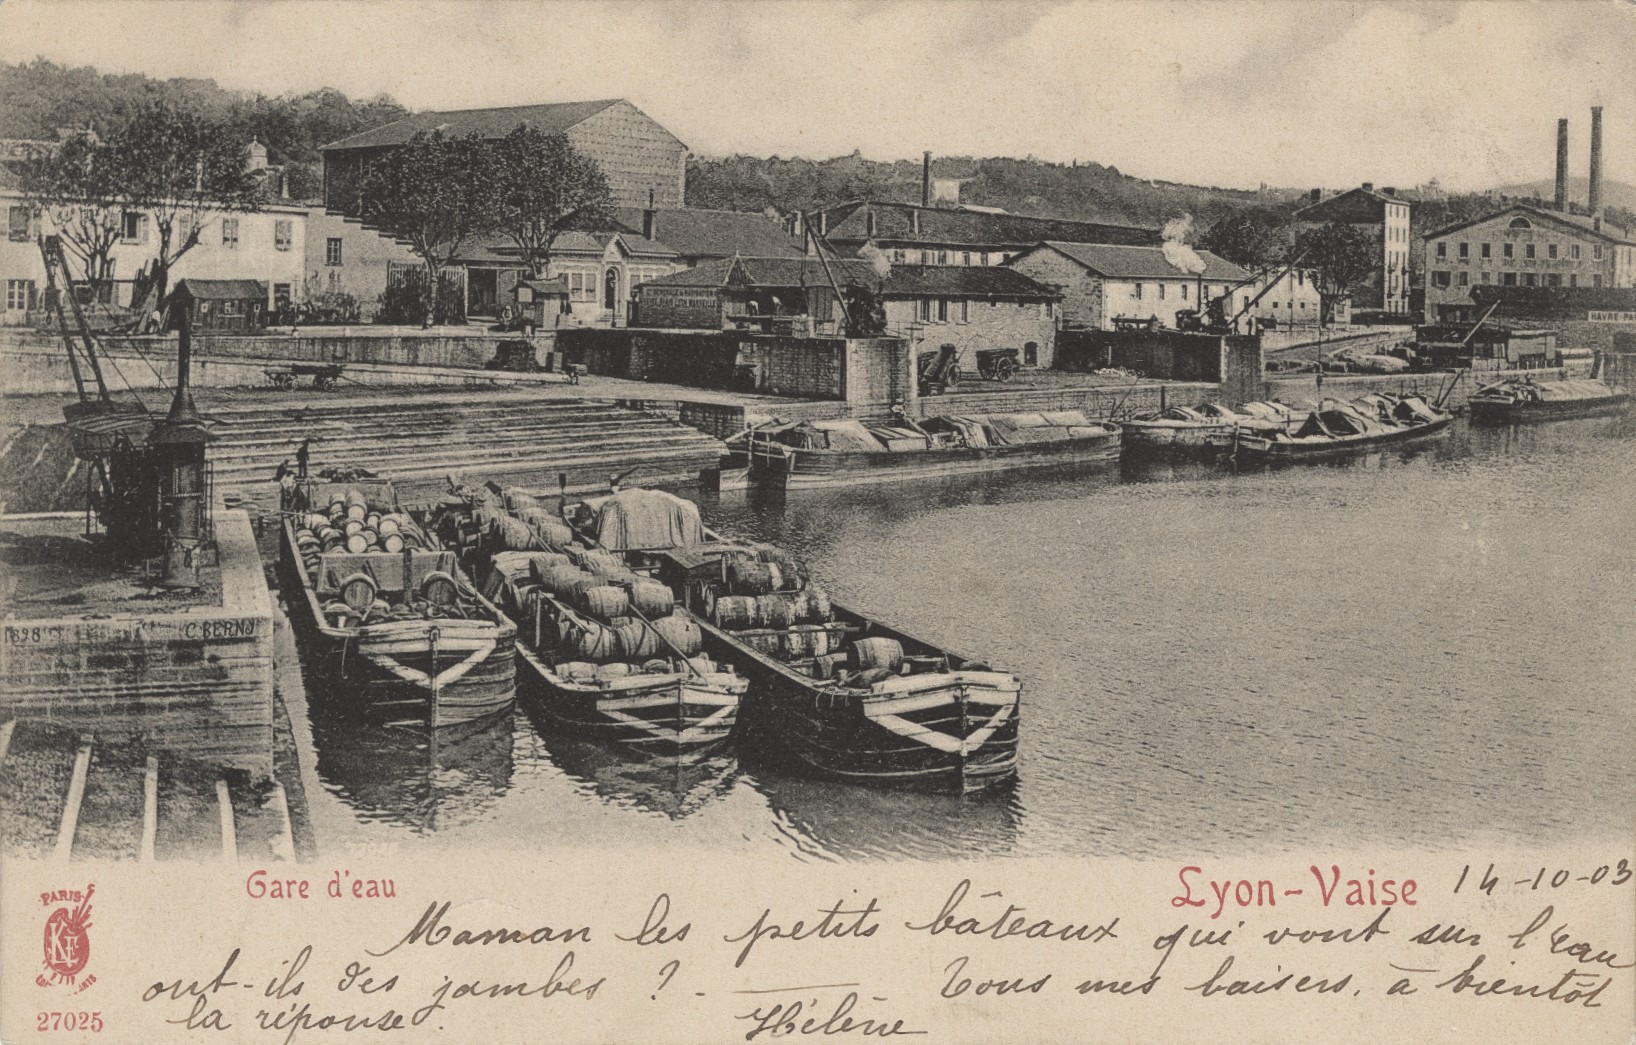 Gare d'eau - Lyon-Vaise : carte postale NB (vers 1903, cote : 4FI/3414)